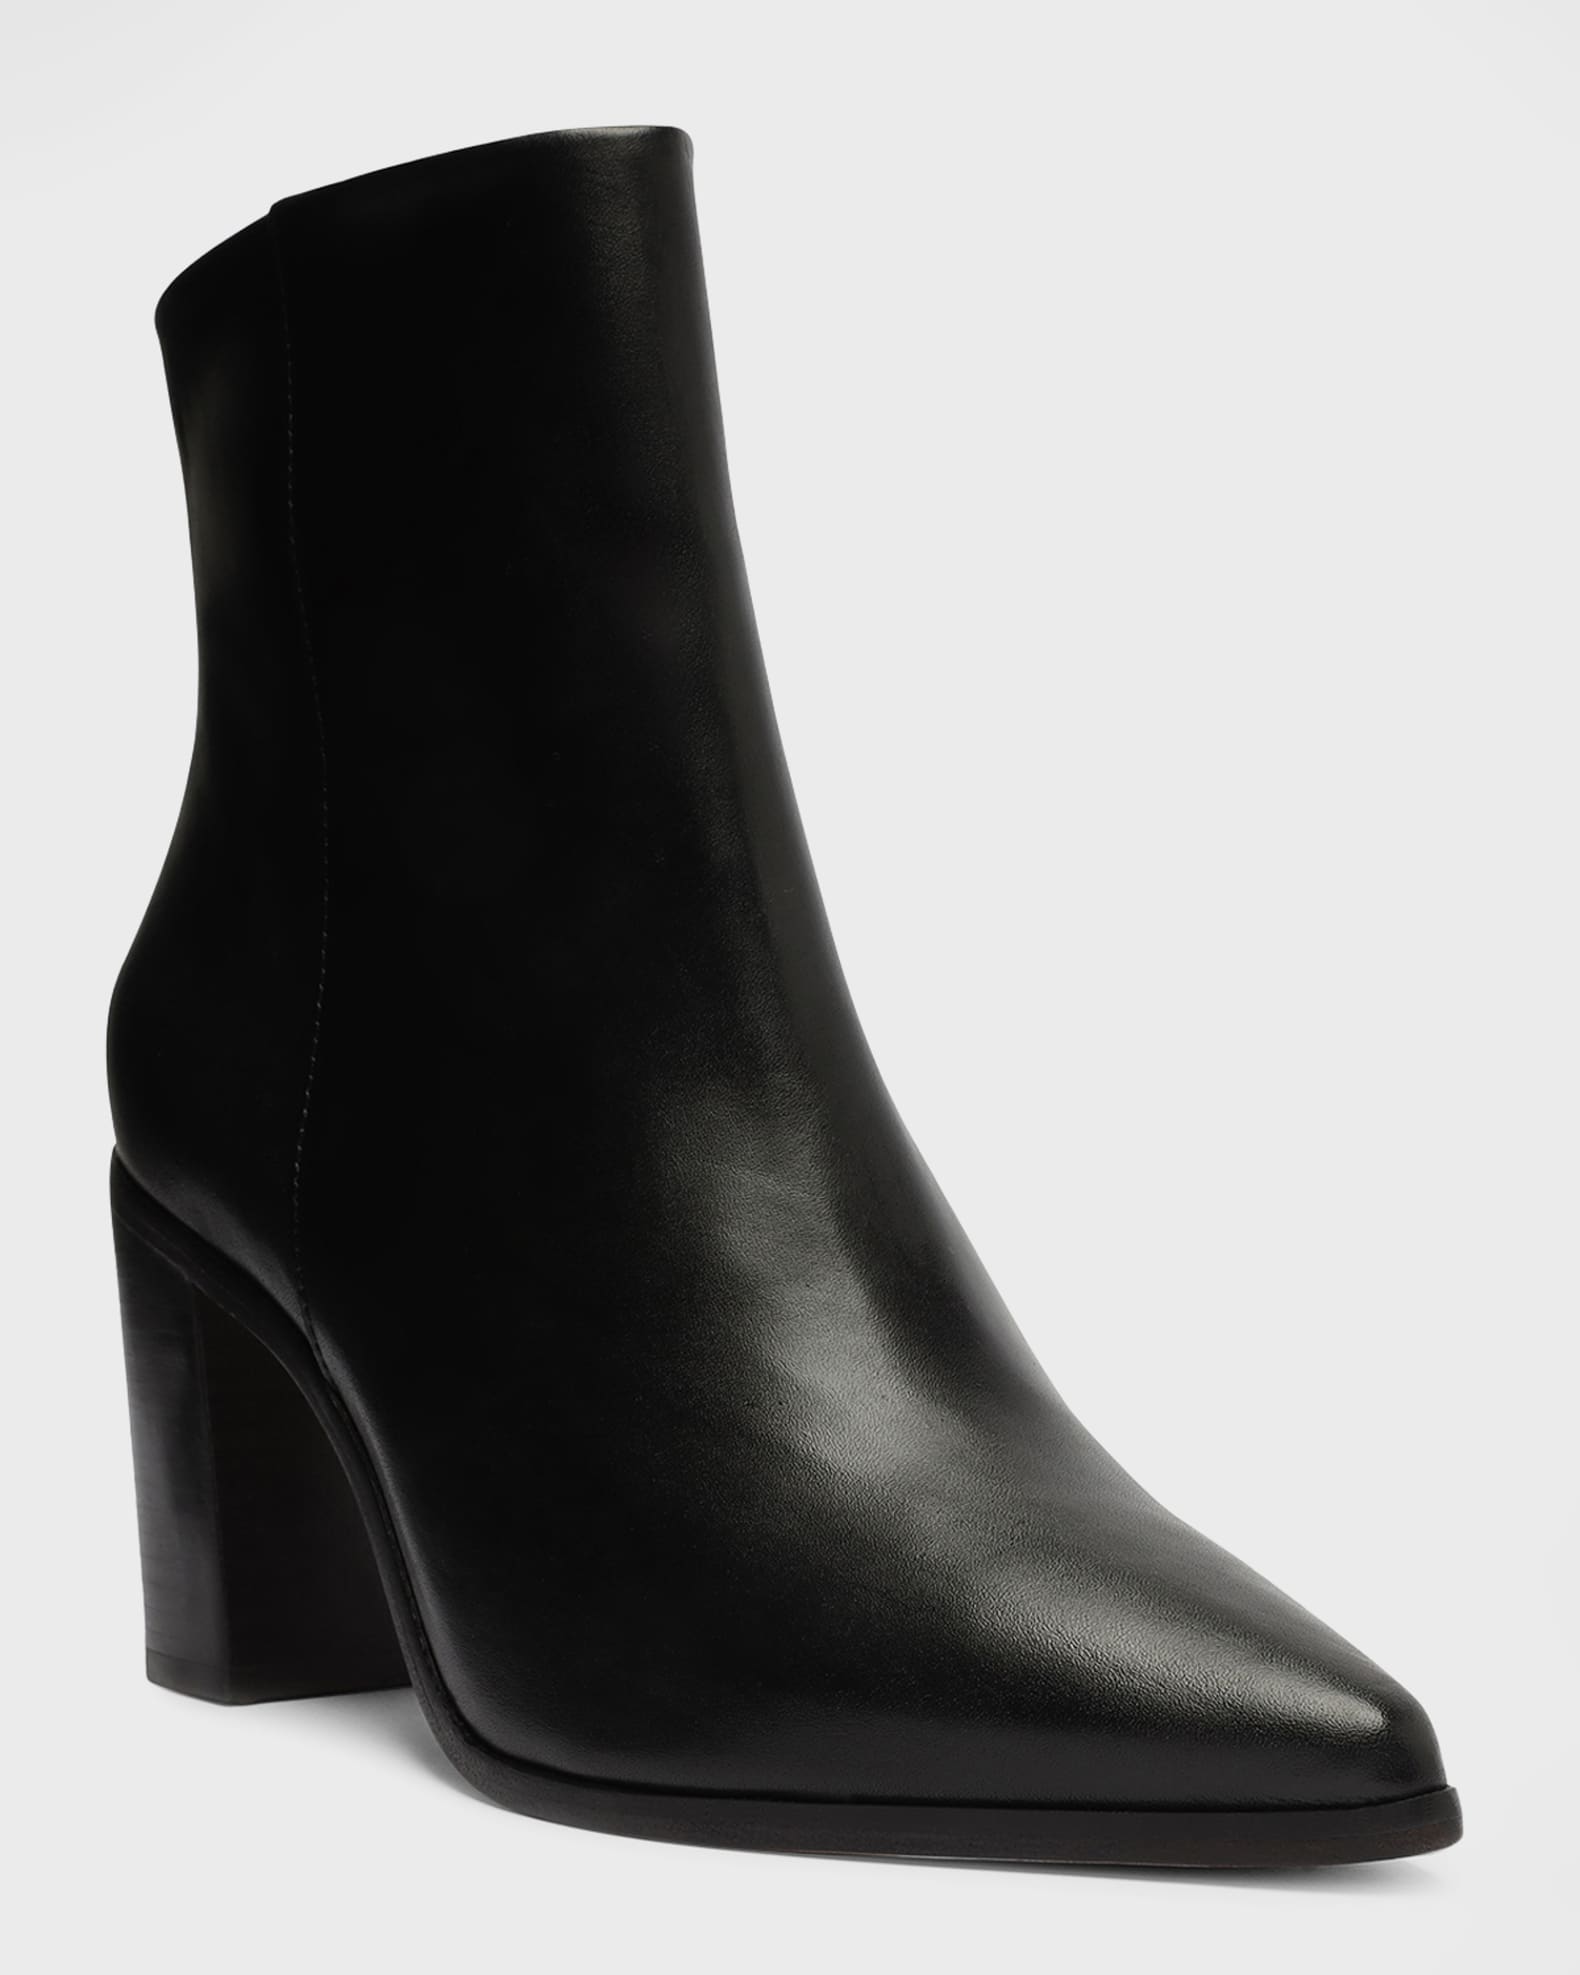 Schutz Maeve Zip Ankle Boots | Neiman Marcus